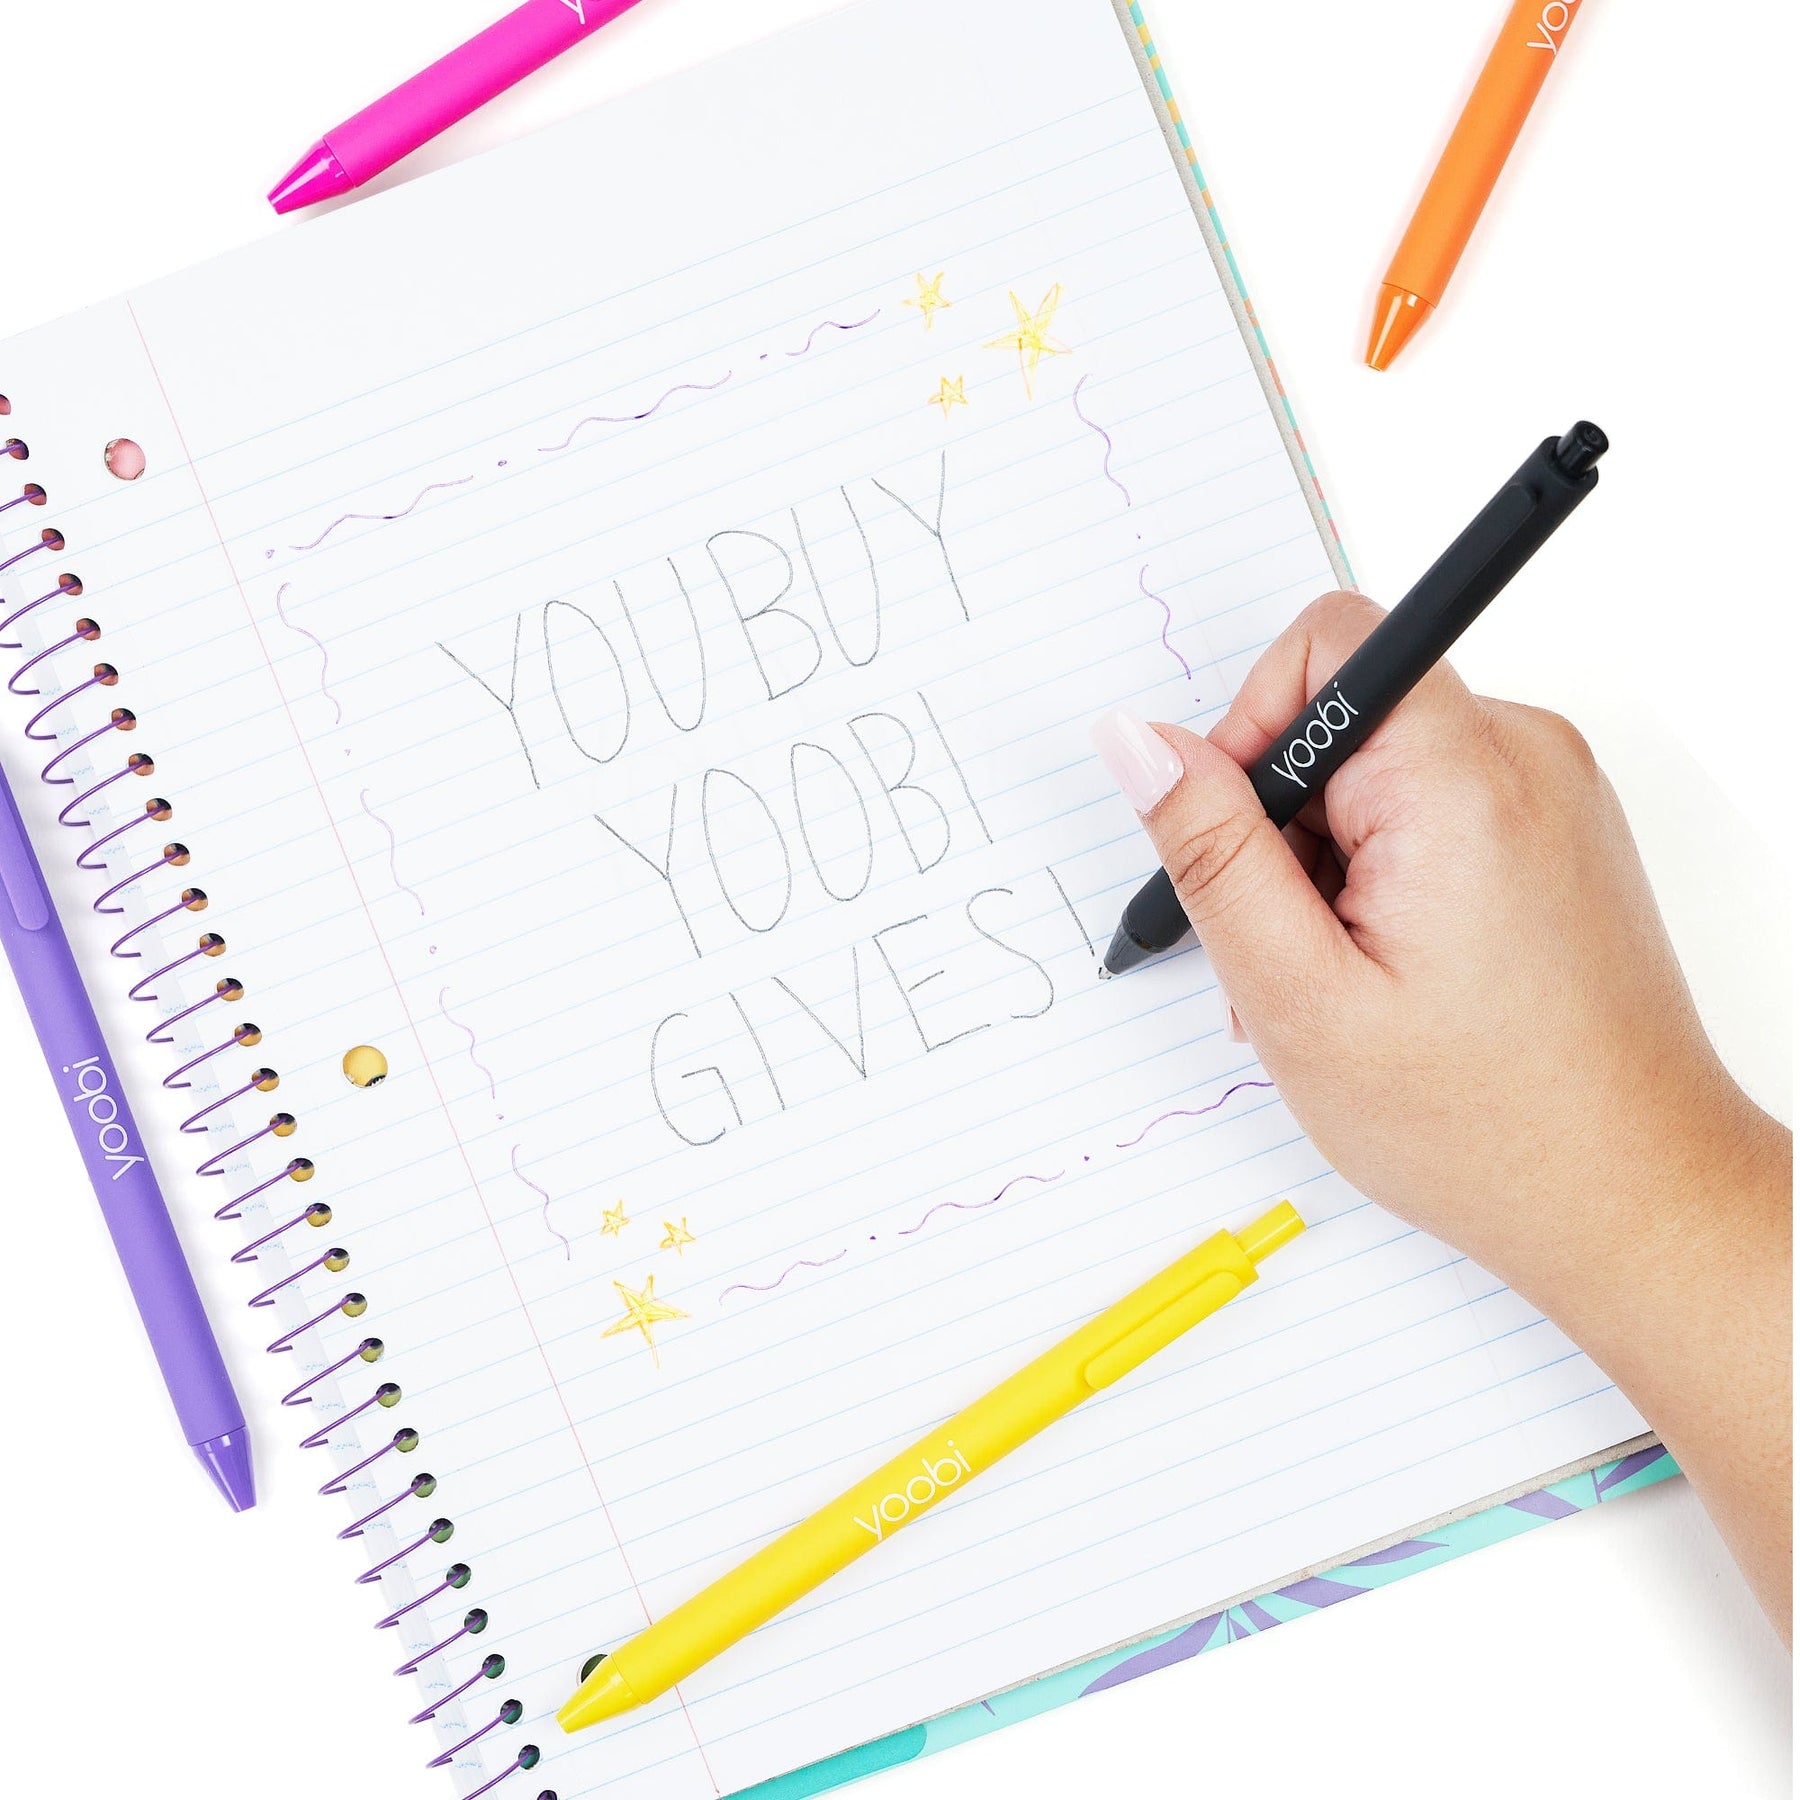 Yoobi Gel Pens Multi Color 24 Pack New.